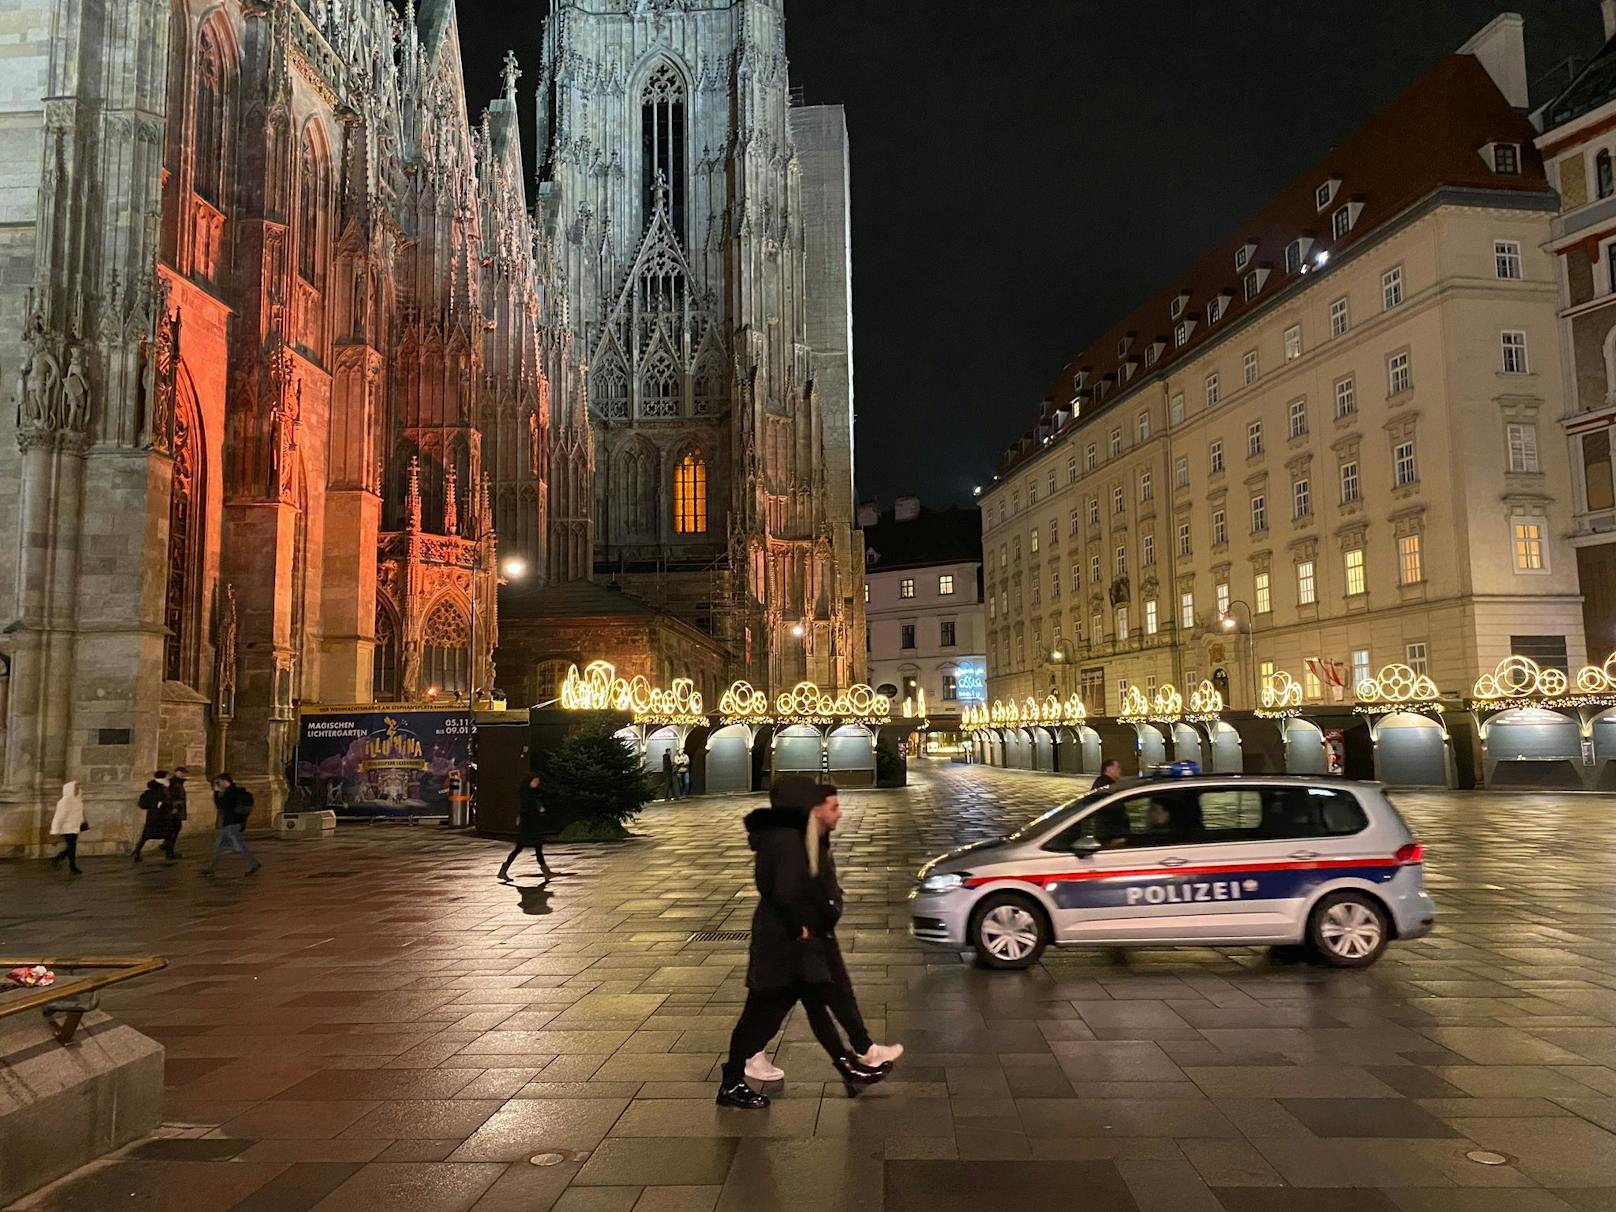 Wien im Lockdown – die Polizei bei nächtlichen Kontrollen in der Innenstadt.